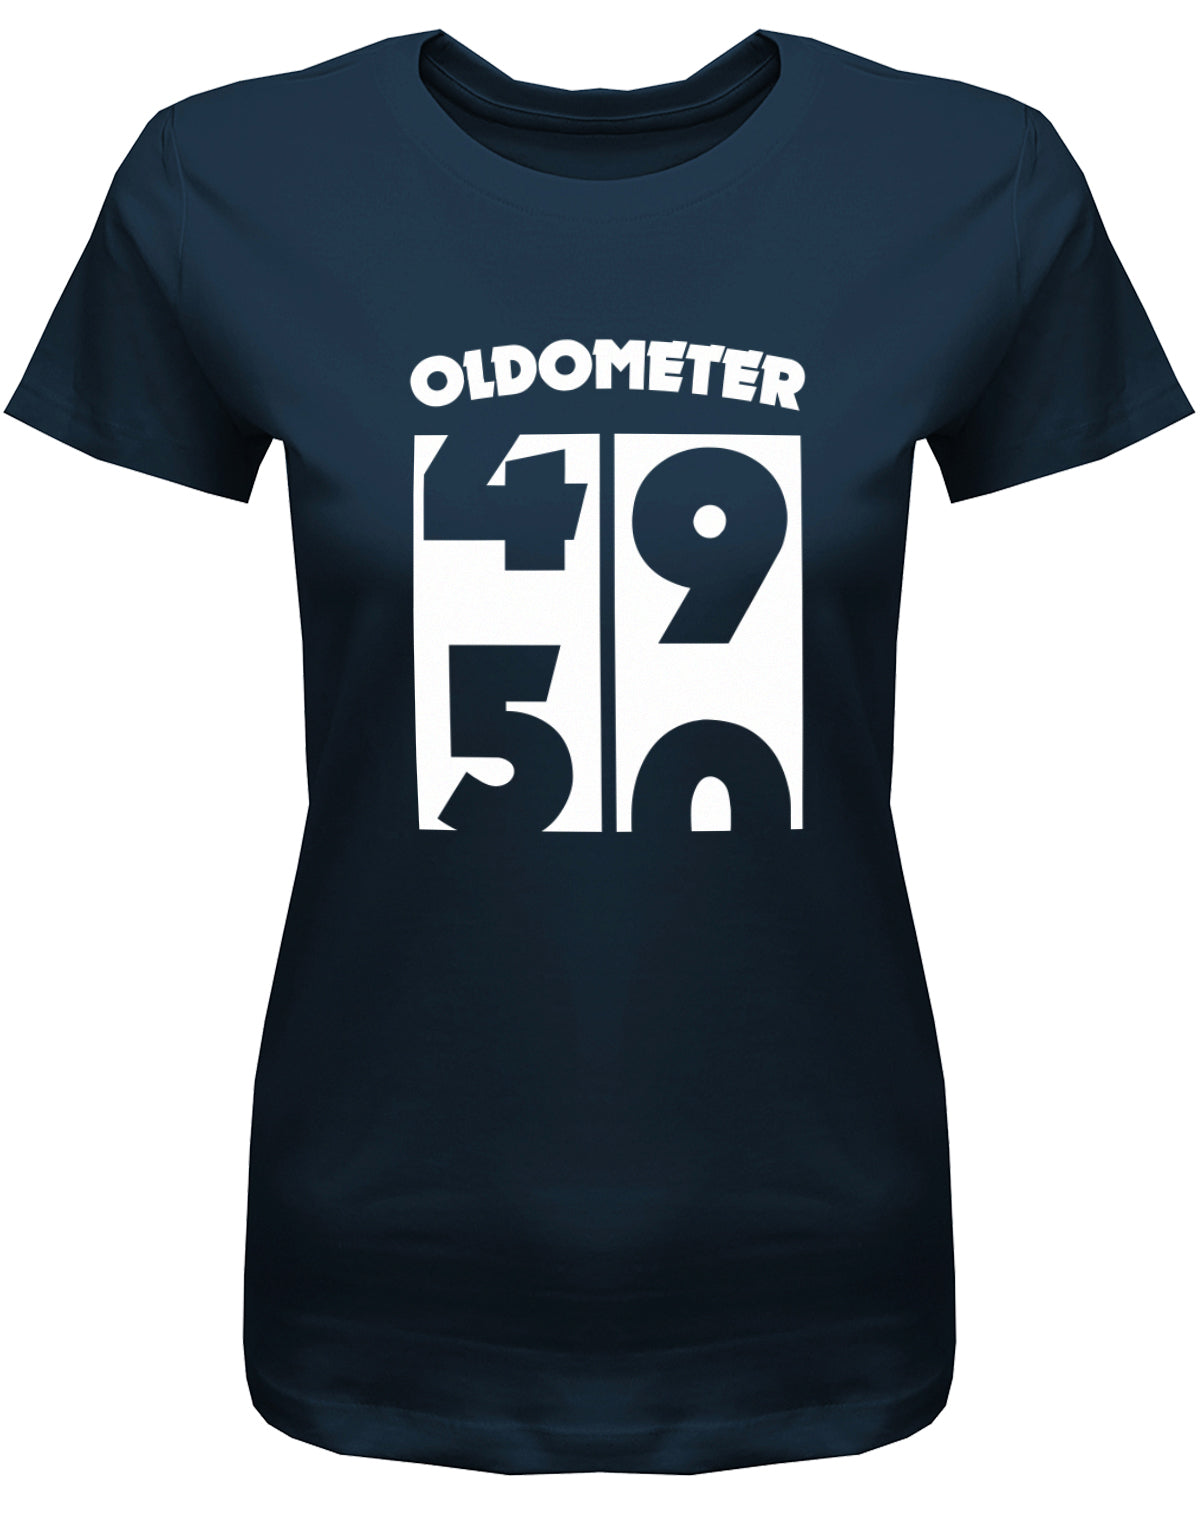 Lustiges T-Shirt zum 50. Geburtstag für die Frau Bedruckt mit Oldometer Wechsel von 49 auf 50 Jahre. Navy